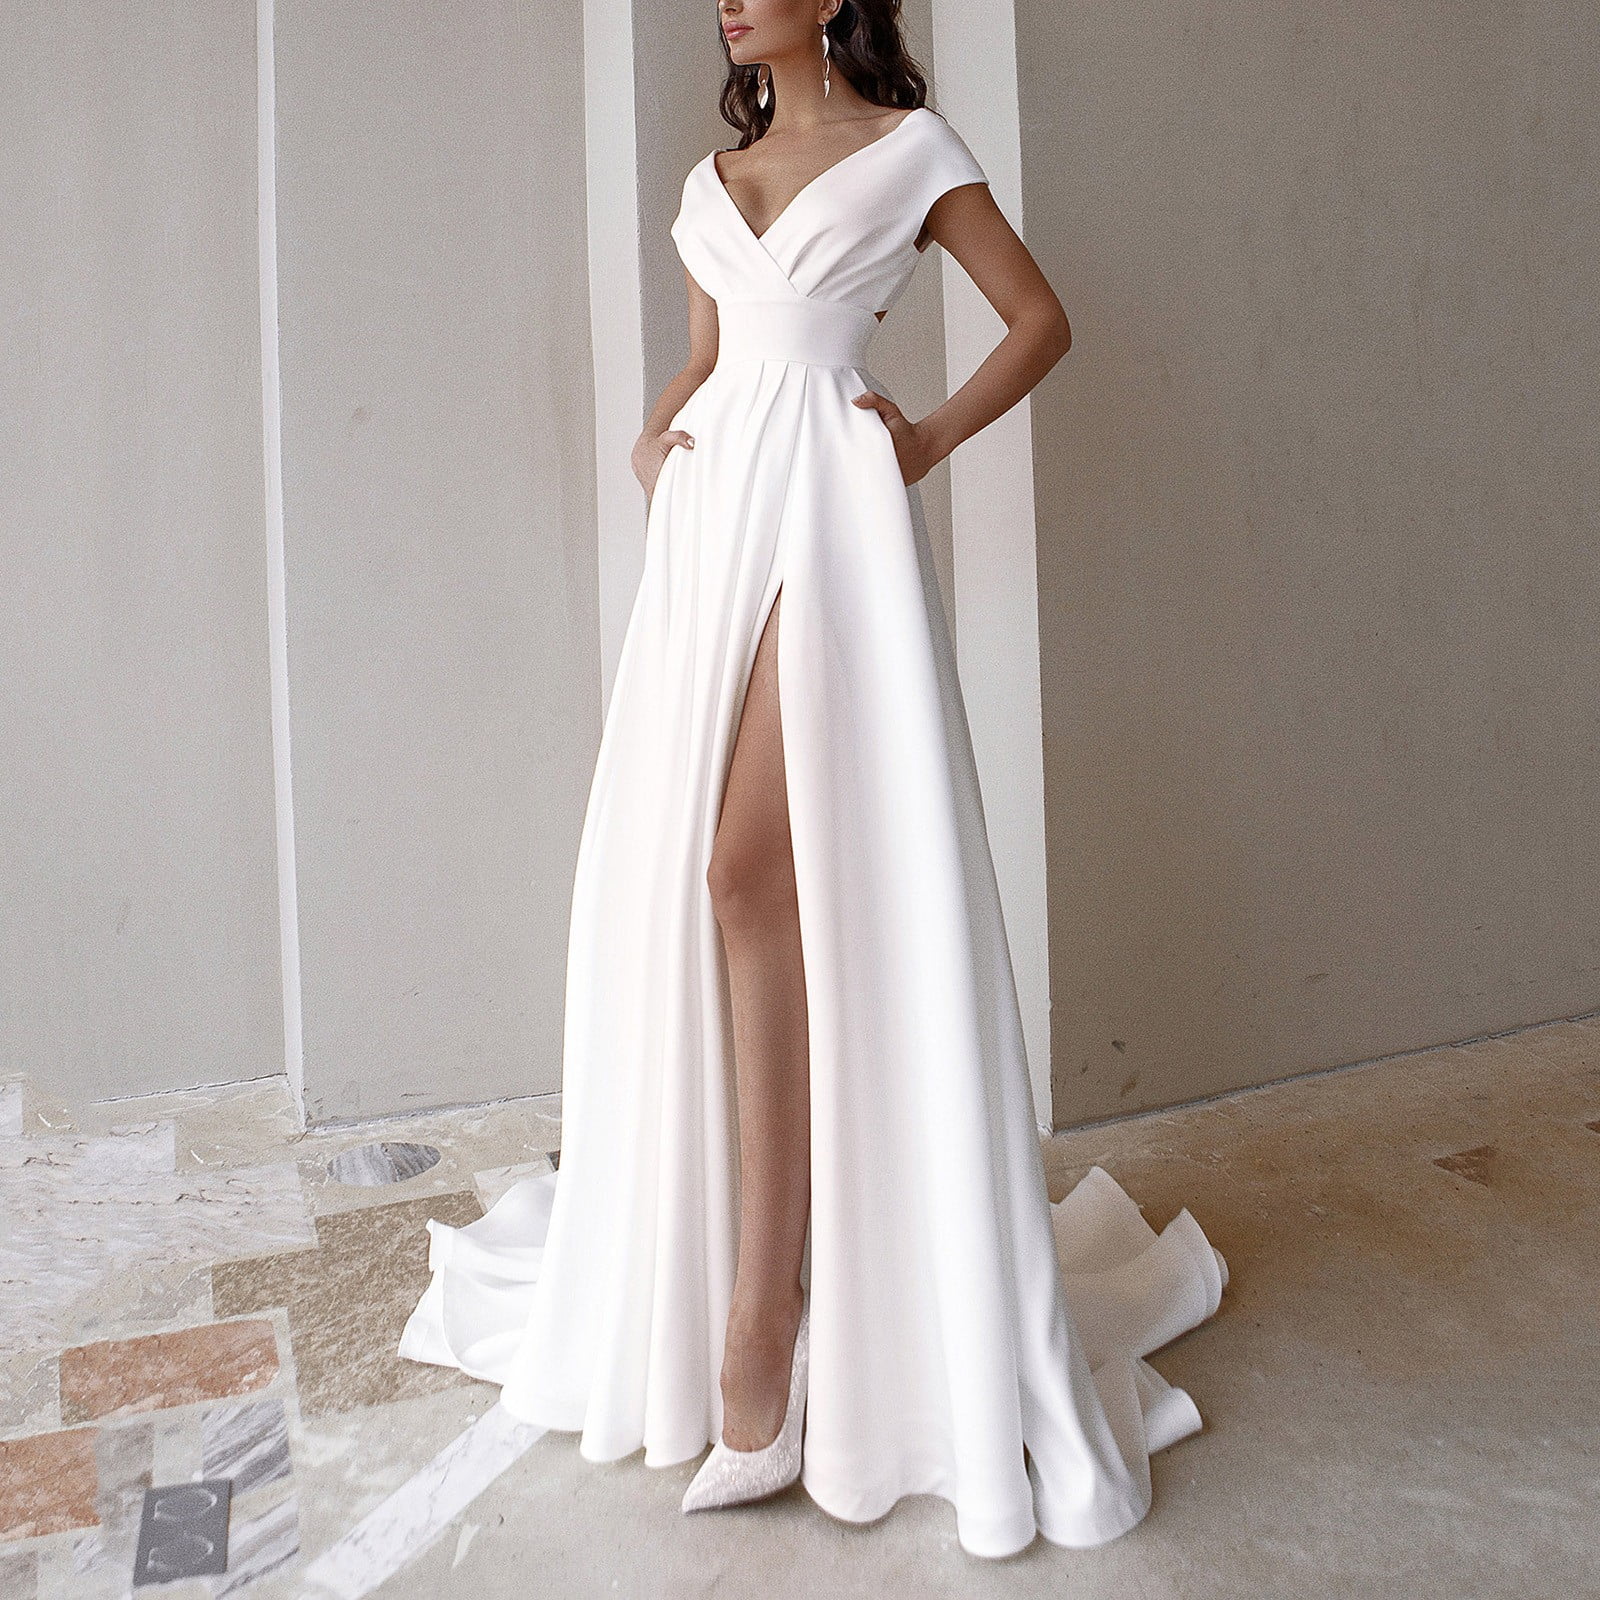 white formal dresses for women